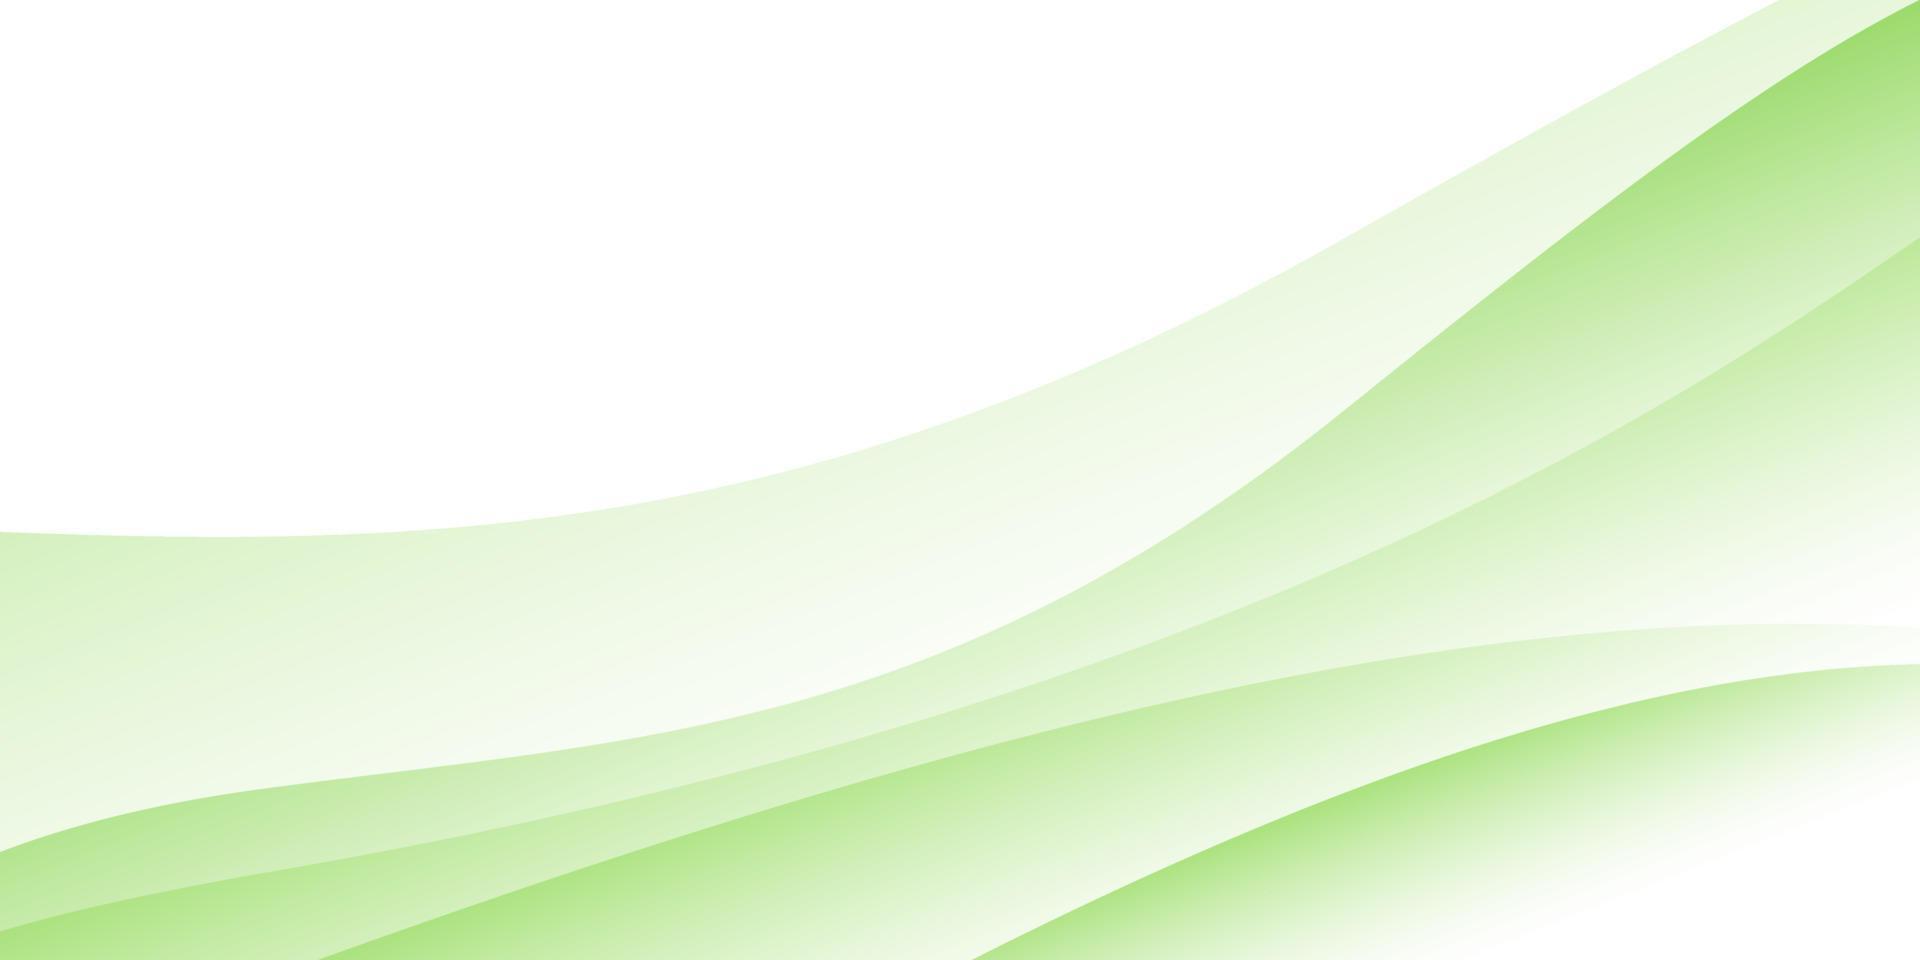 groene achtergrond voor brede banner, ontwerpsjabloon vector